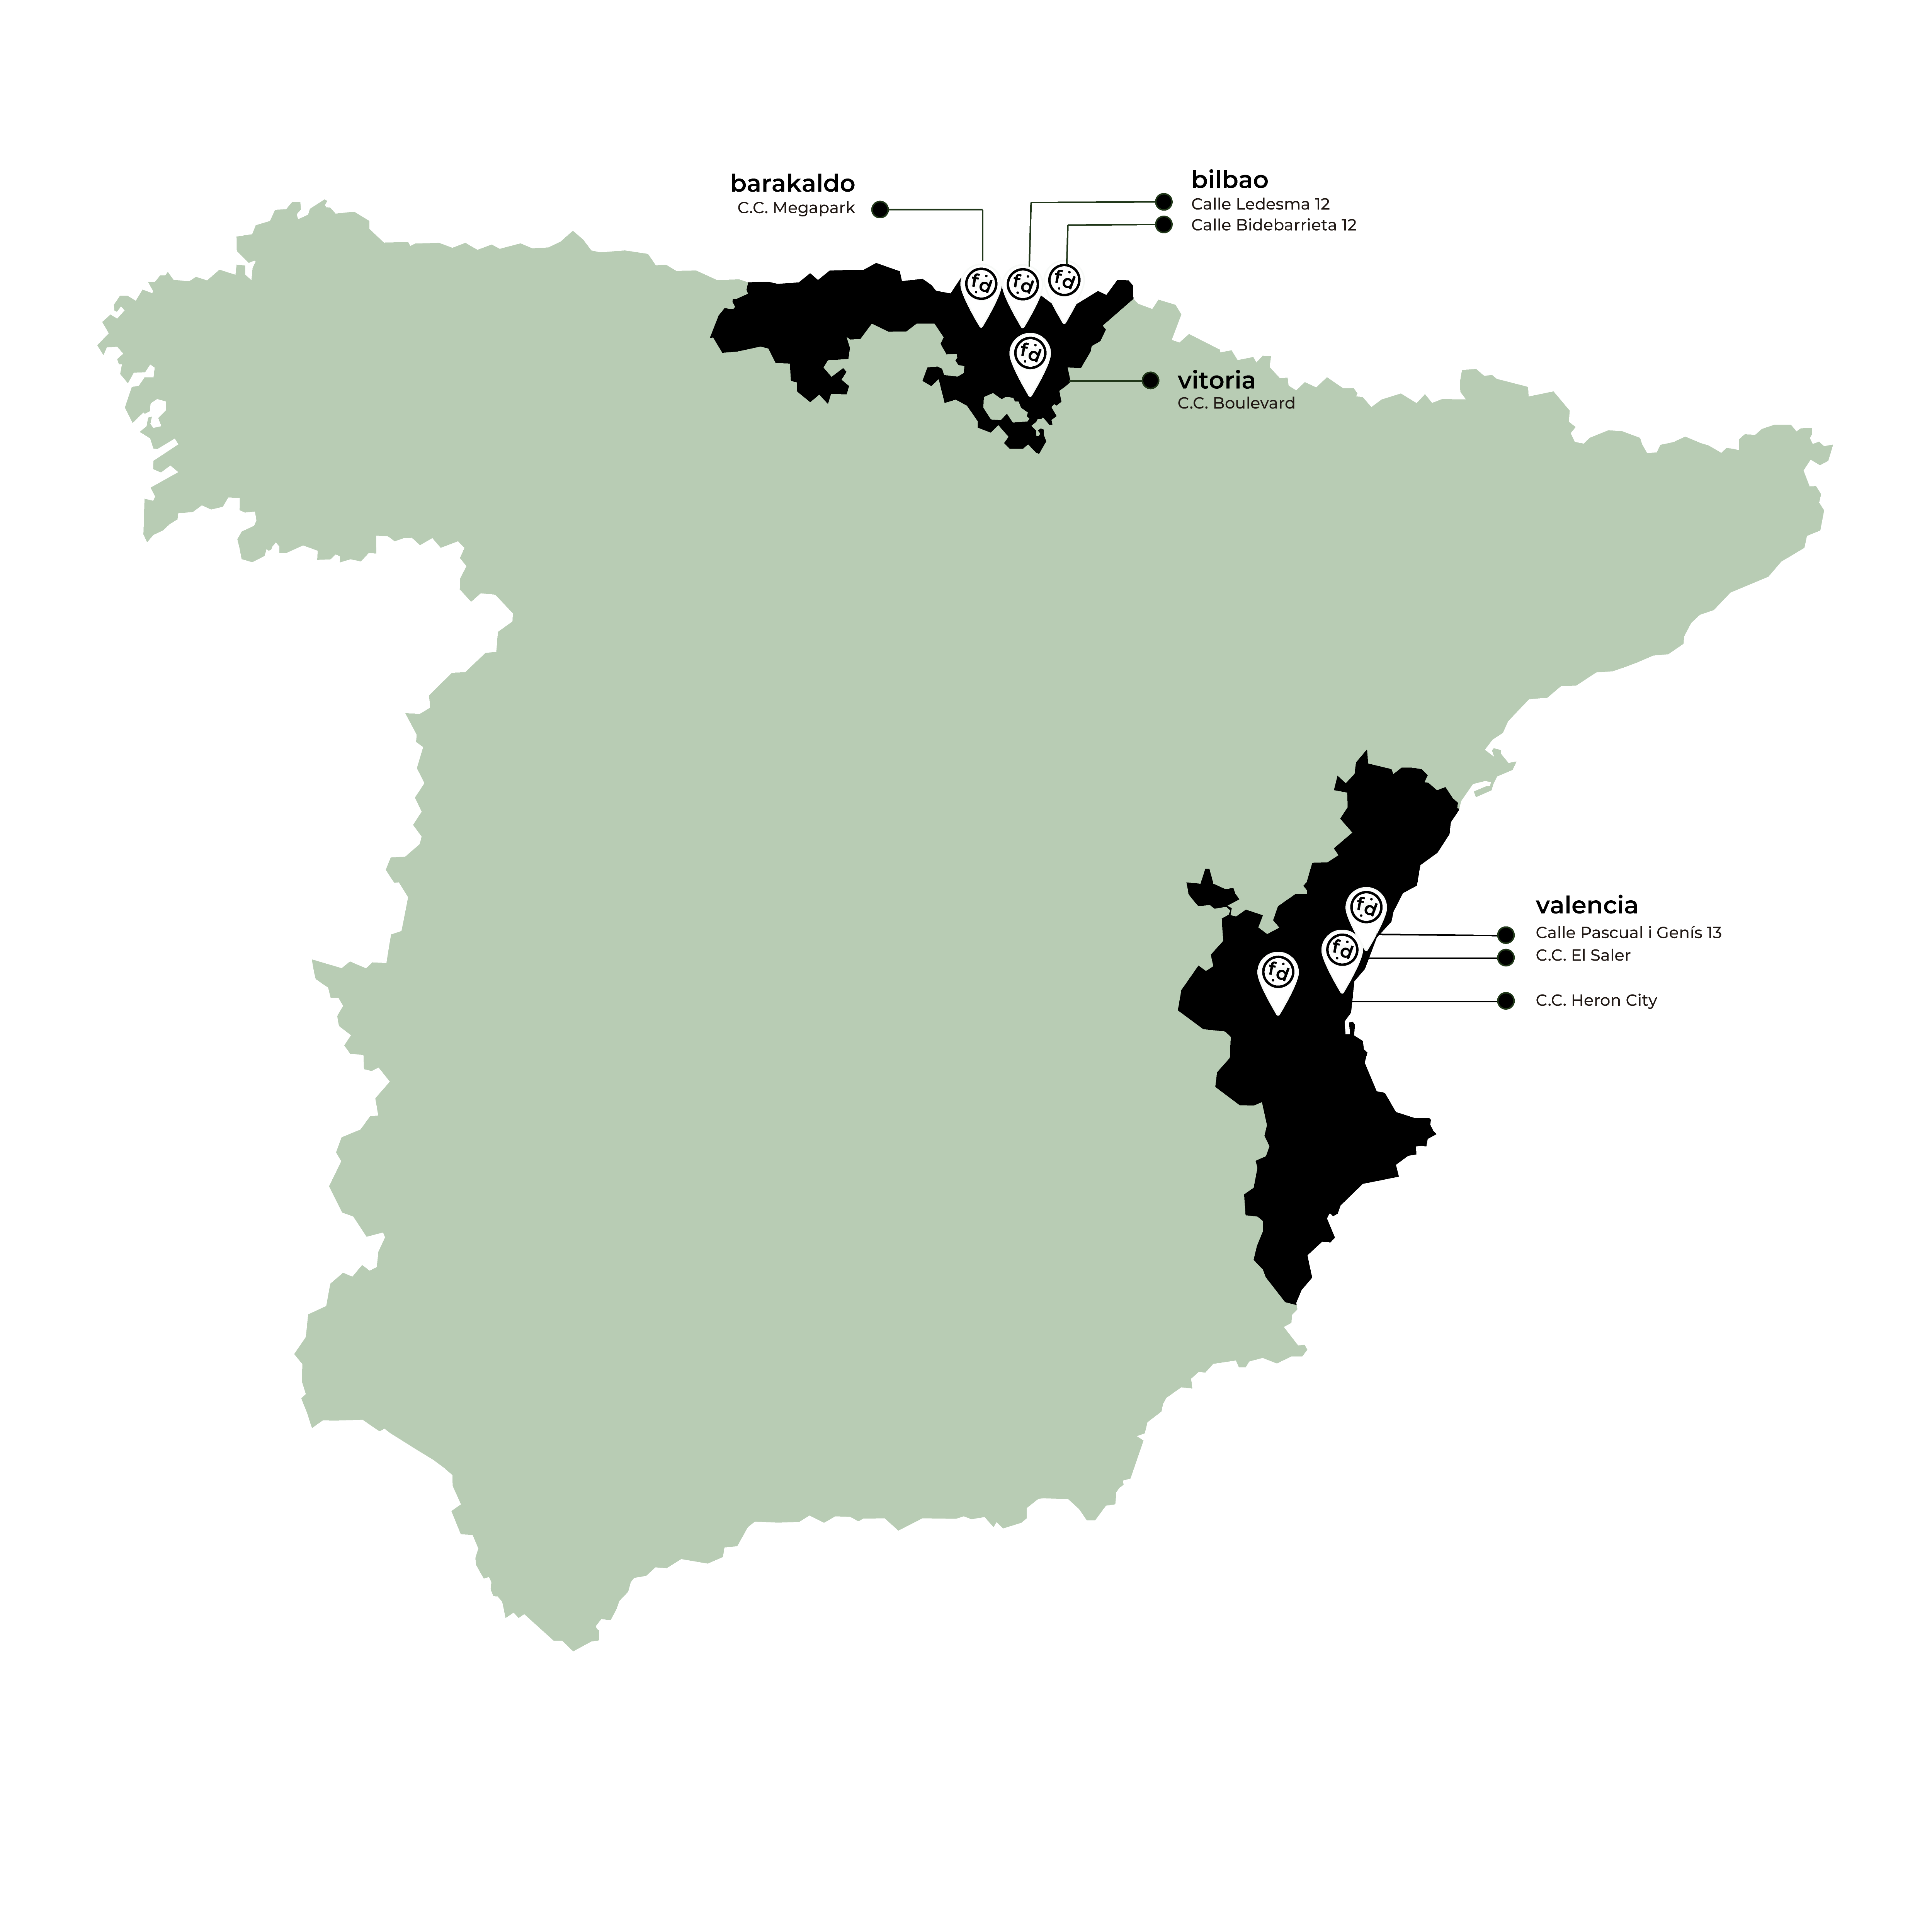 Mapa de la península ibérica con las ubicaciones de los distintos restaurantes Foodoo en Barakaldo, Bilbao, Vitoria y Valencia